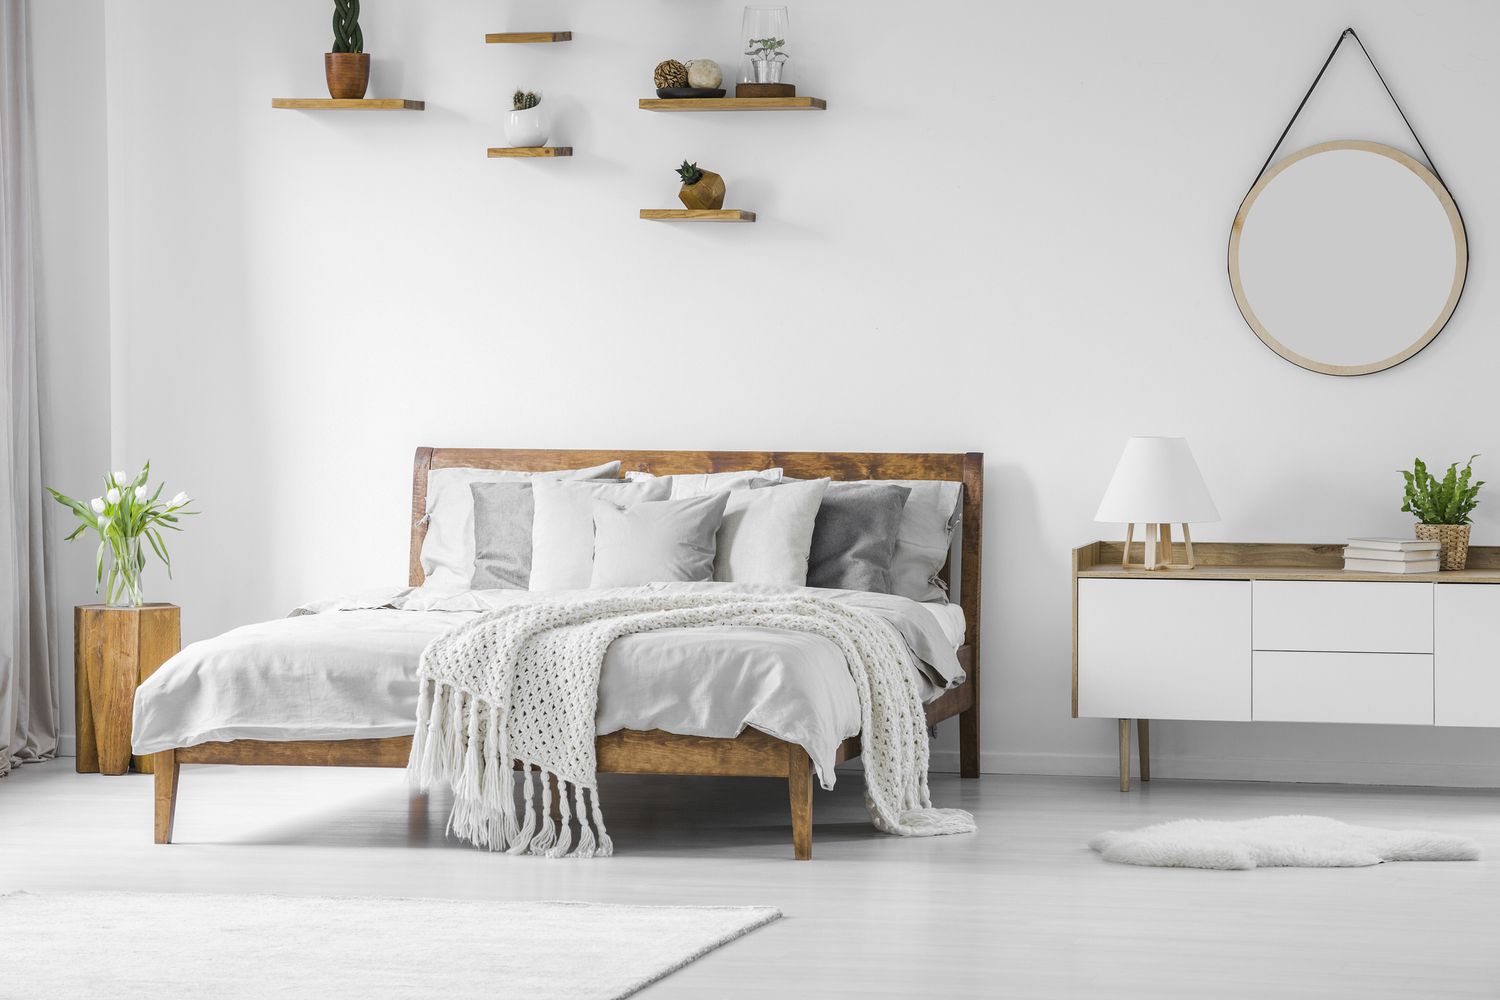 Cómoda cama grande con marco de madera, ropa de cama, almohadas y manta, mesilla de noche al lado y espejo redondo colgado en una pared blanca en el interior de un dormitorio luminoso.